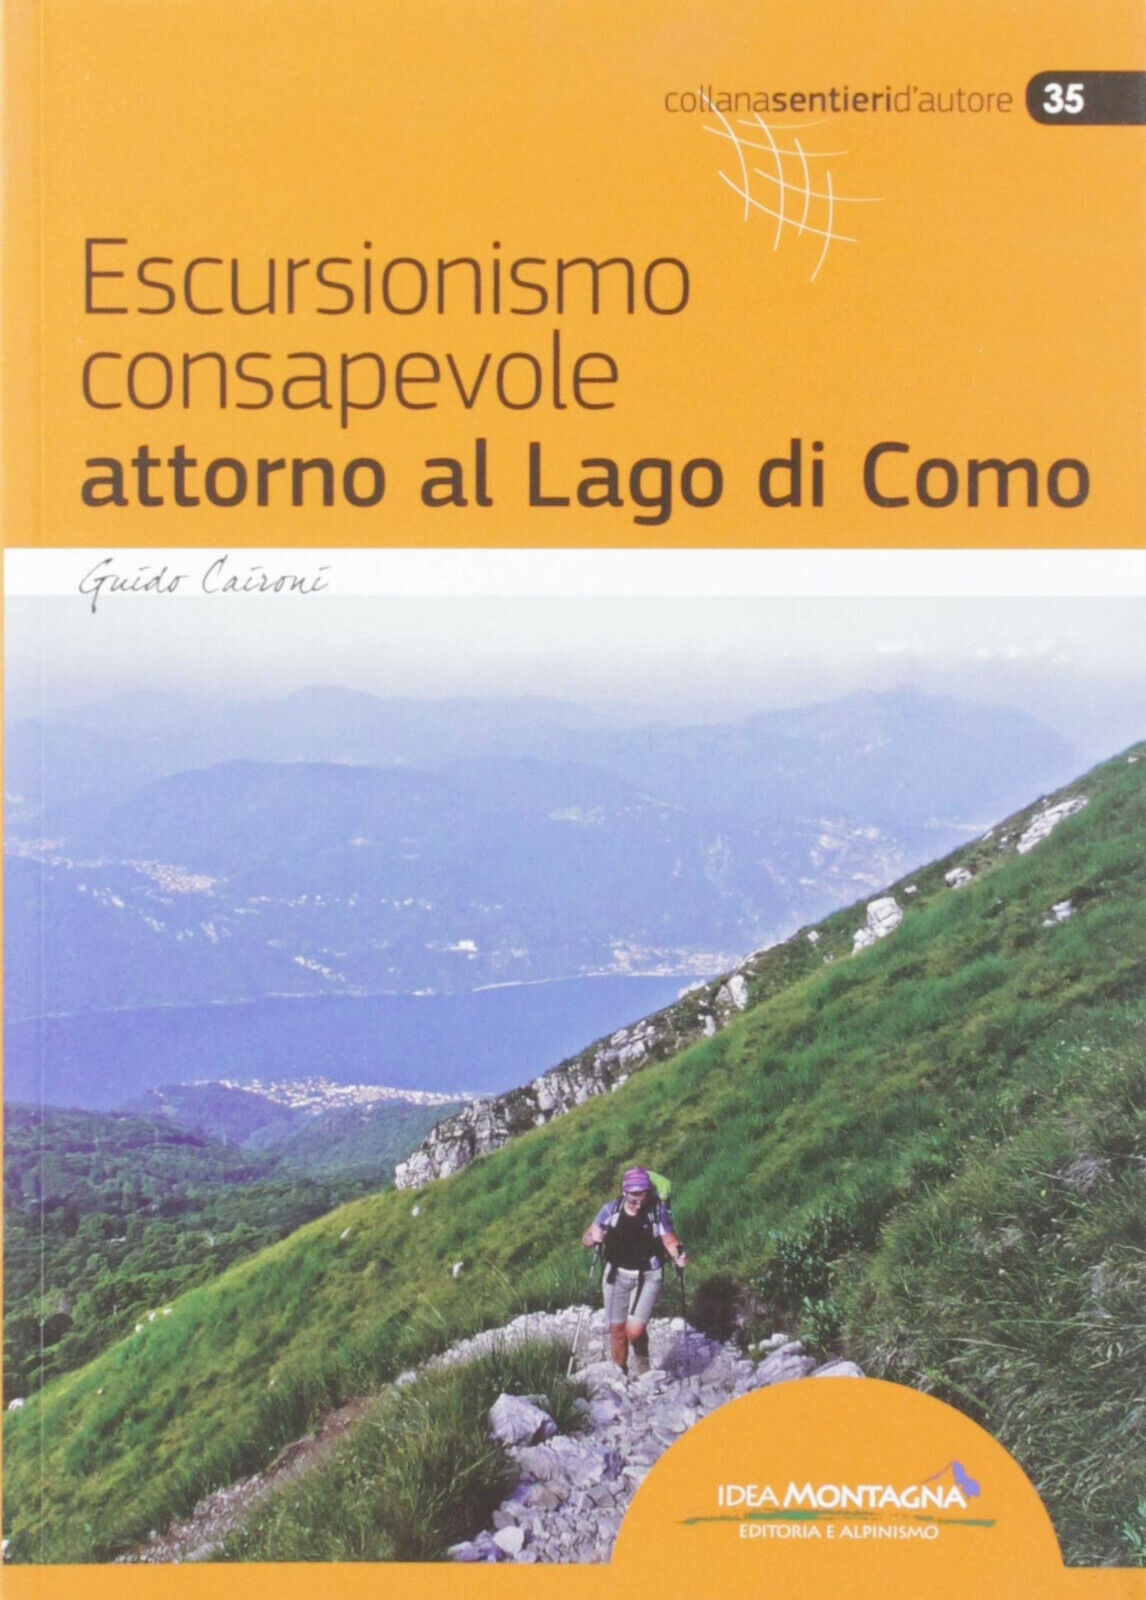 Escursionismo consapevole attorno al lago di Como - Guido Caironi - 2019